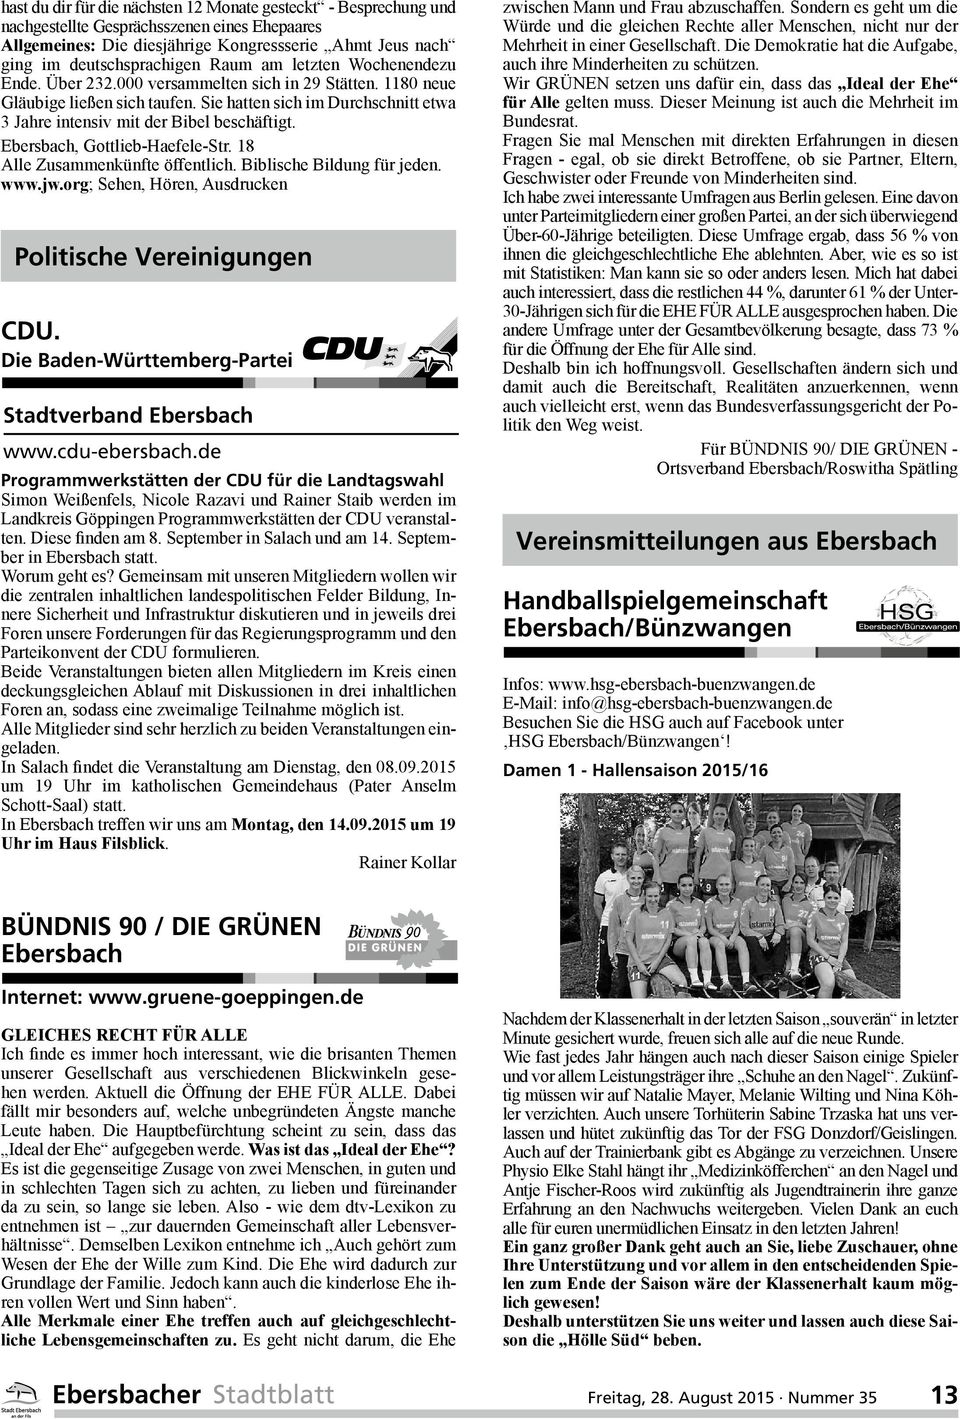 Ebersbach, Gottlieb-Haefele-Str. 18 Alle Zusammenkünfte öffentlich. Biblische Bildung für jeden. www.jw.org; Sehen, Hören, Ausdrucken Politische Vereinigungen CDU.